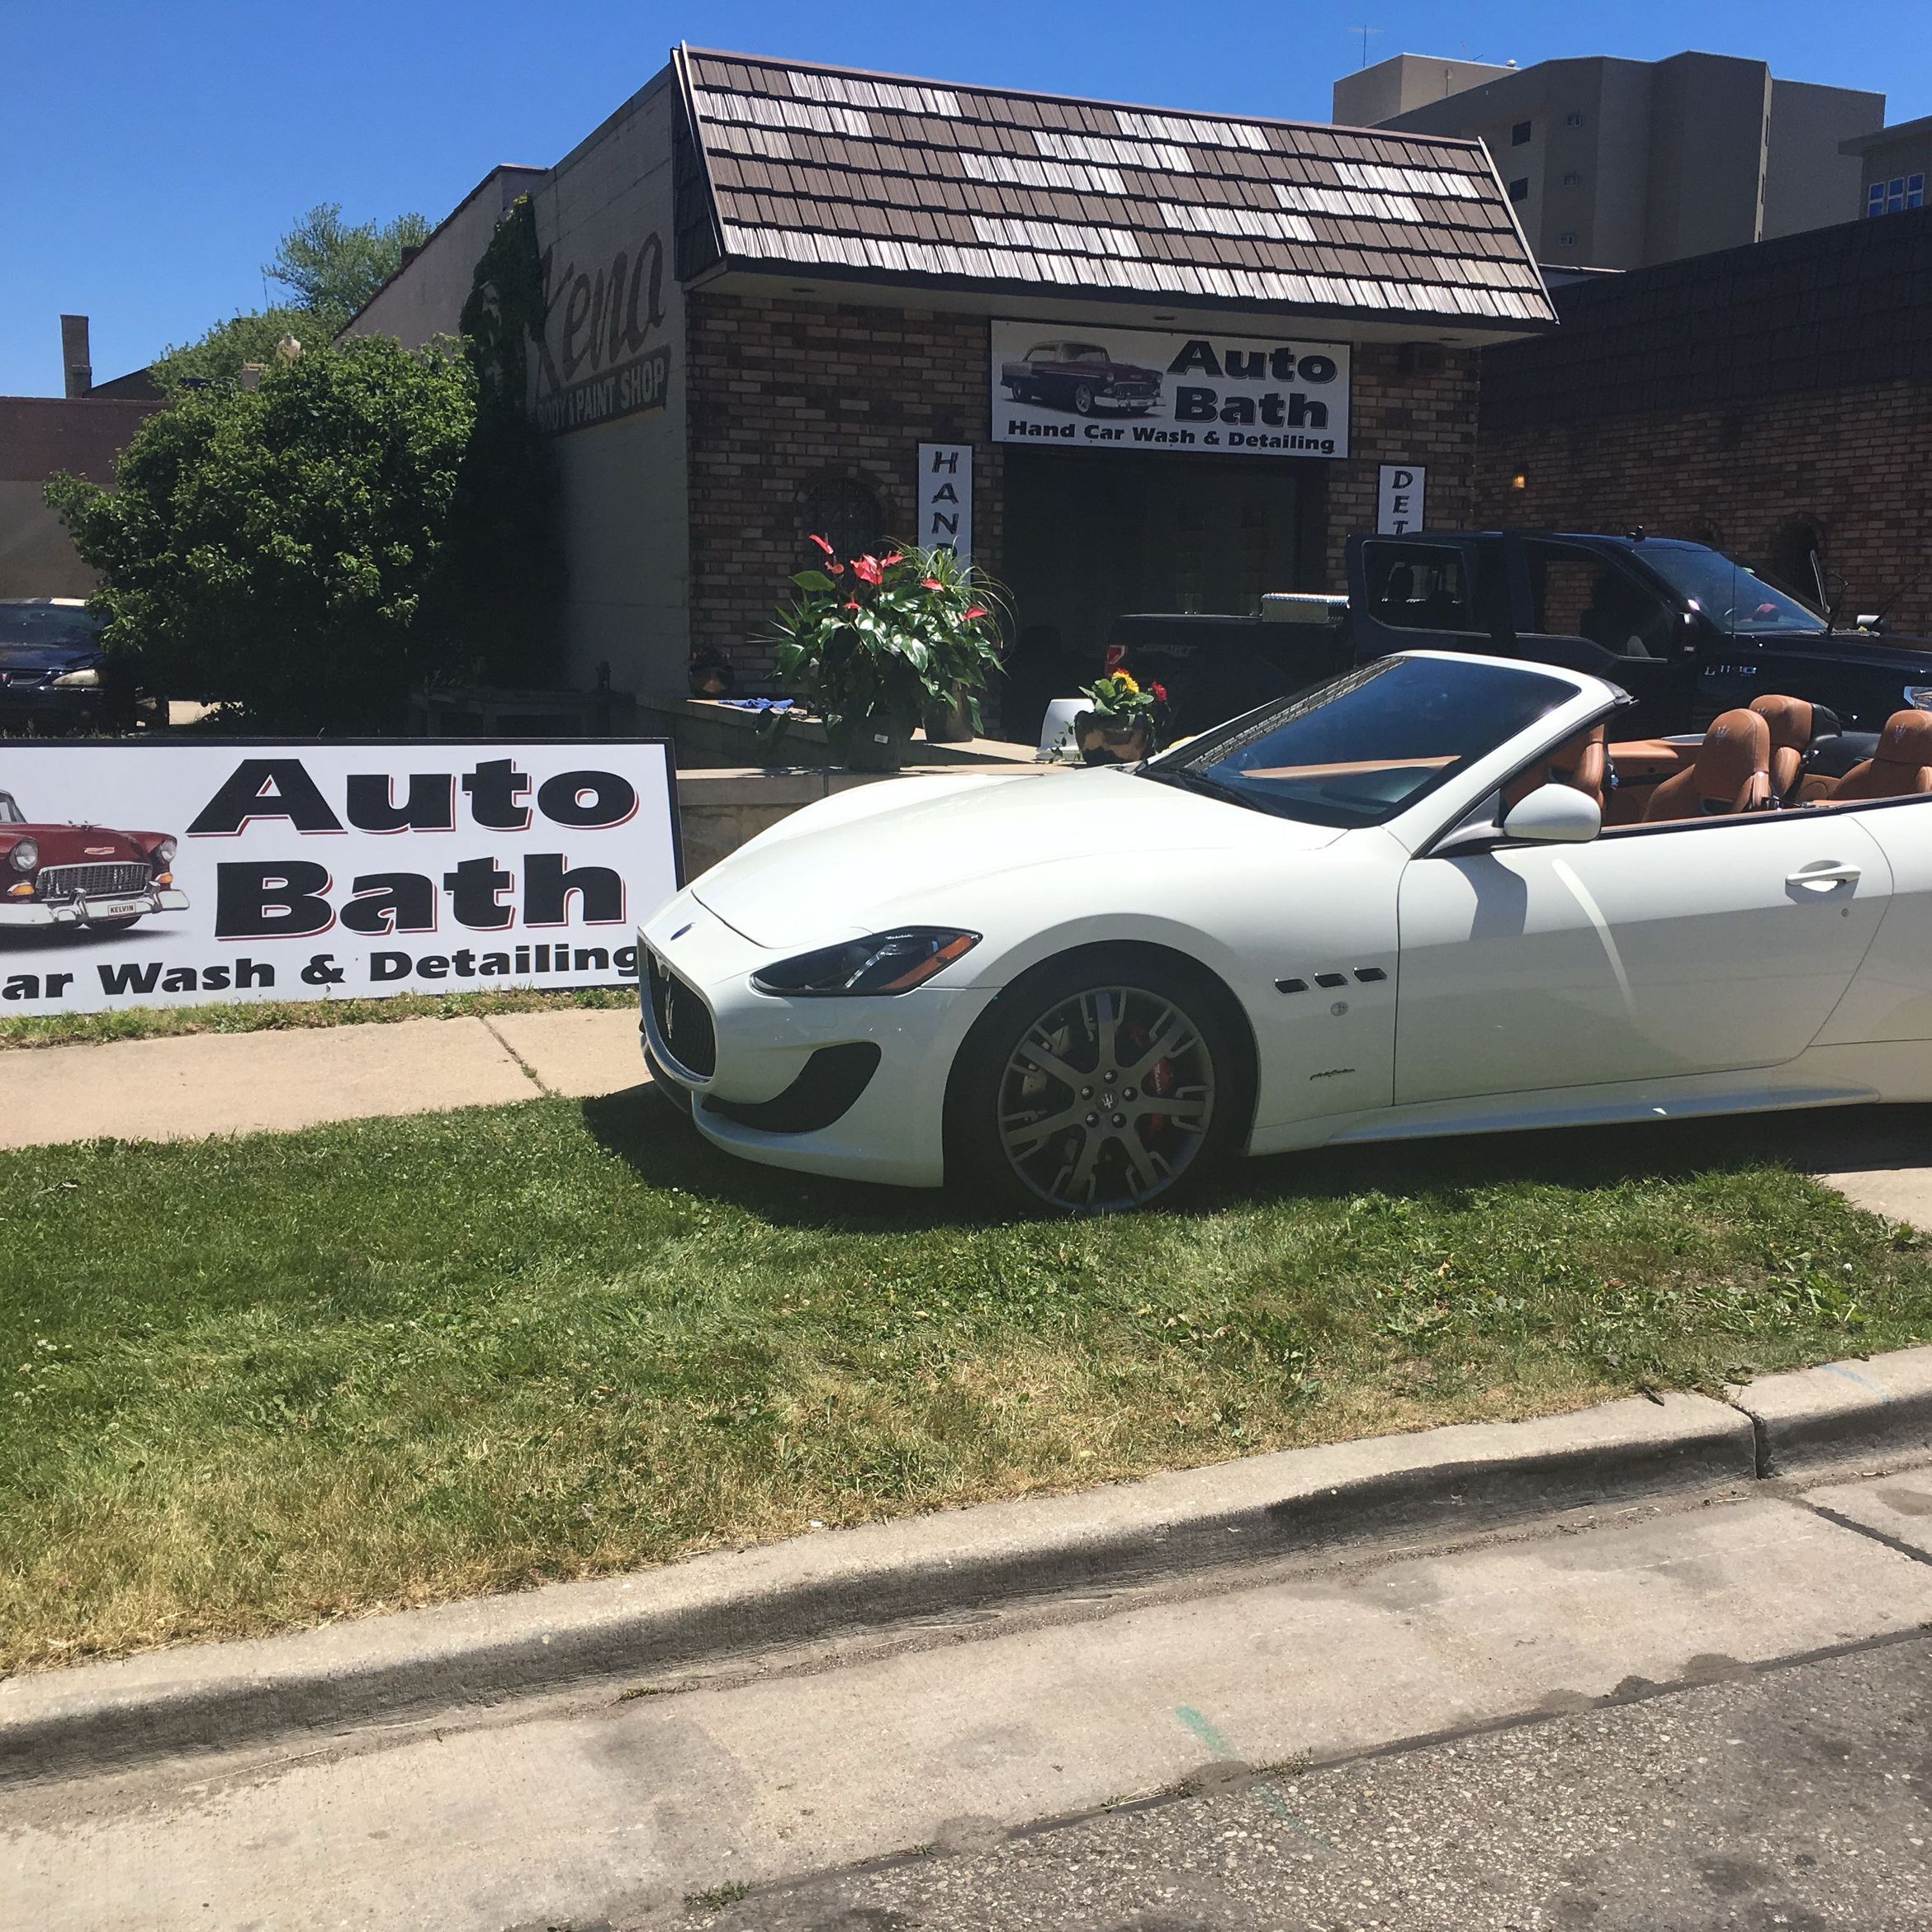 Auto Bath, 5725 5th Ave, Kenosha, 53140